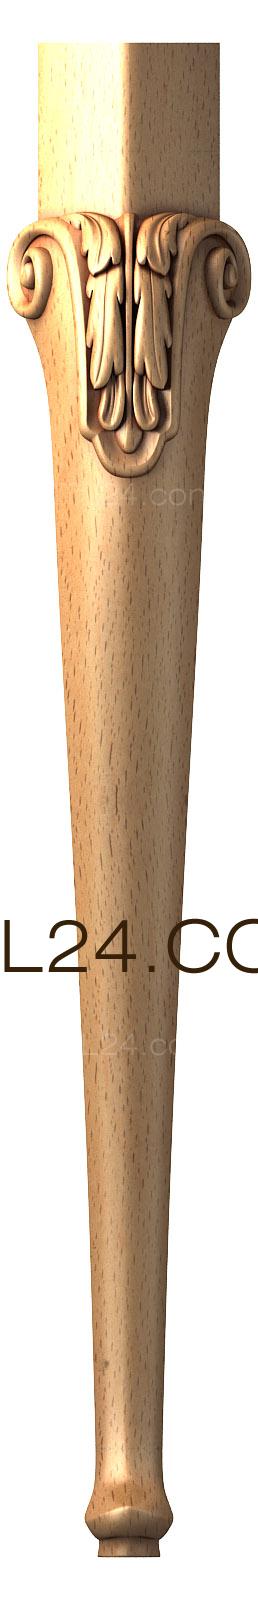 Ножки (NJ_0486) 3D модель для ЧПУ станка